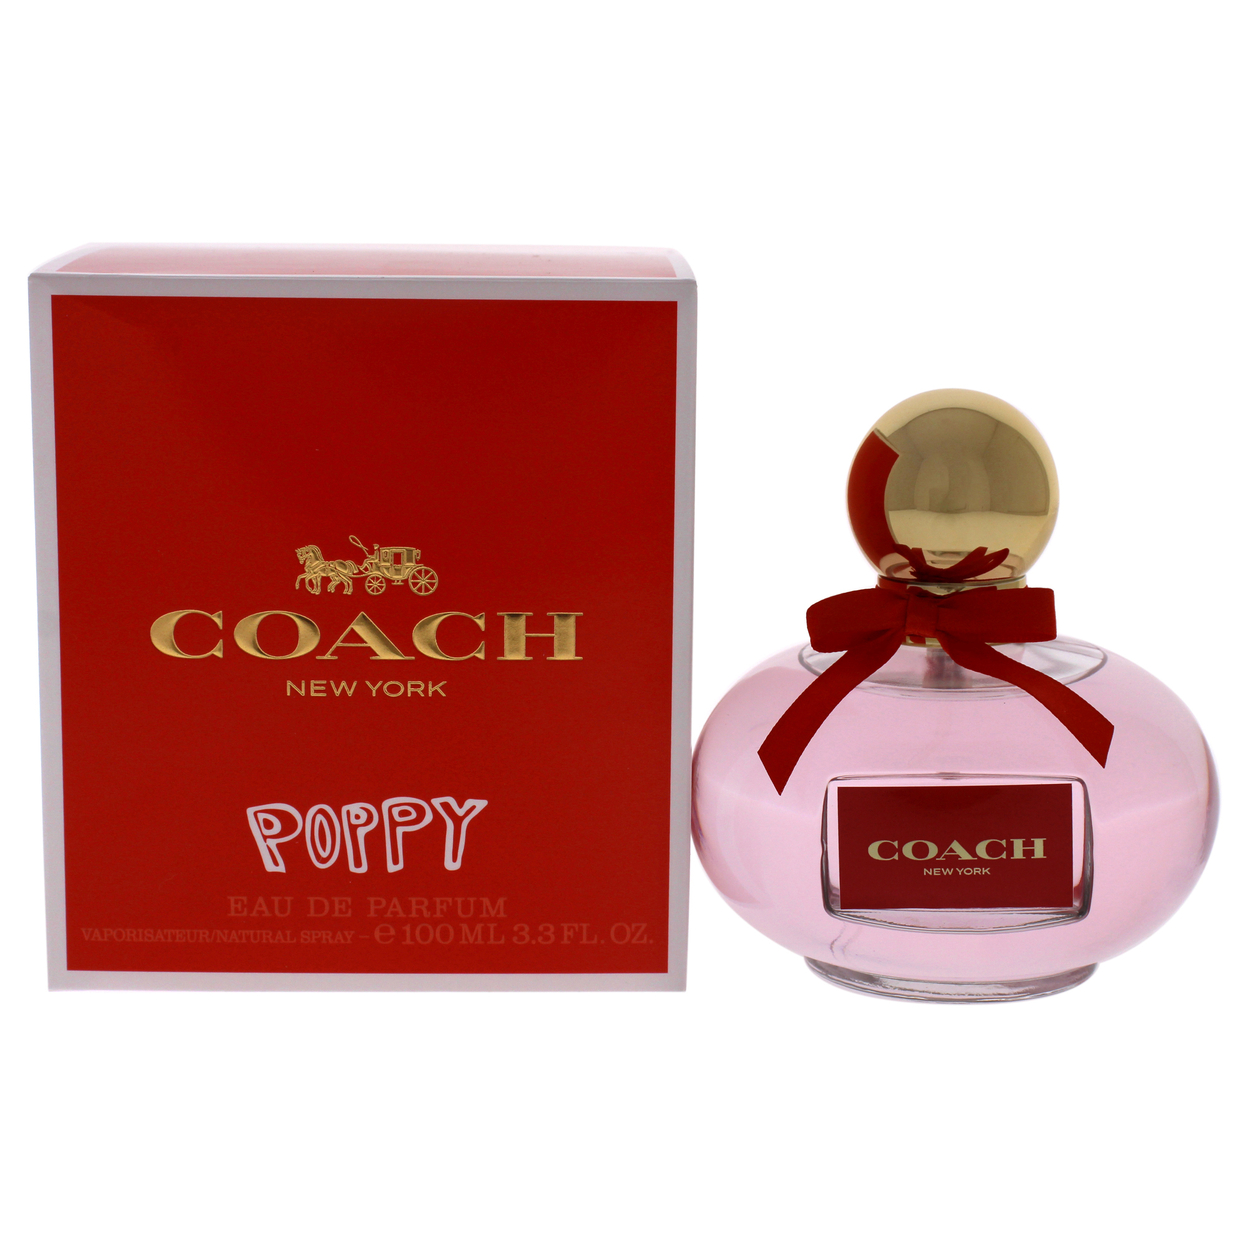 Coach Poppy Eau De Parfum, Perfume for Women, 3.4 oz - image 1 of 3